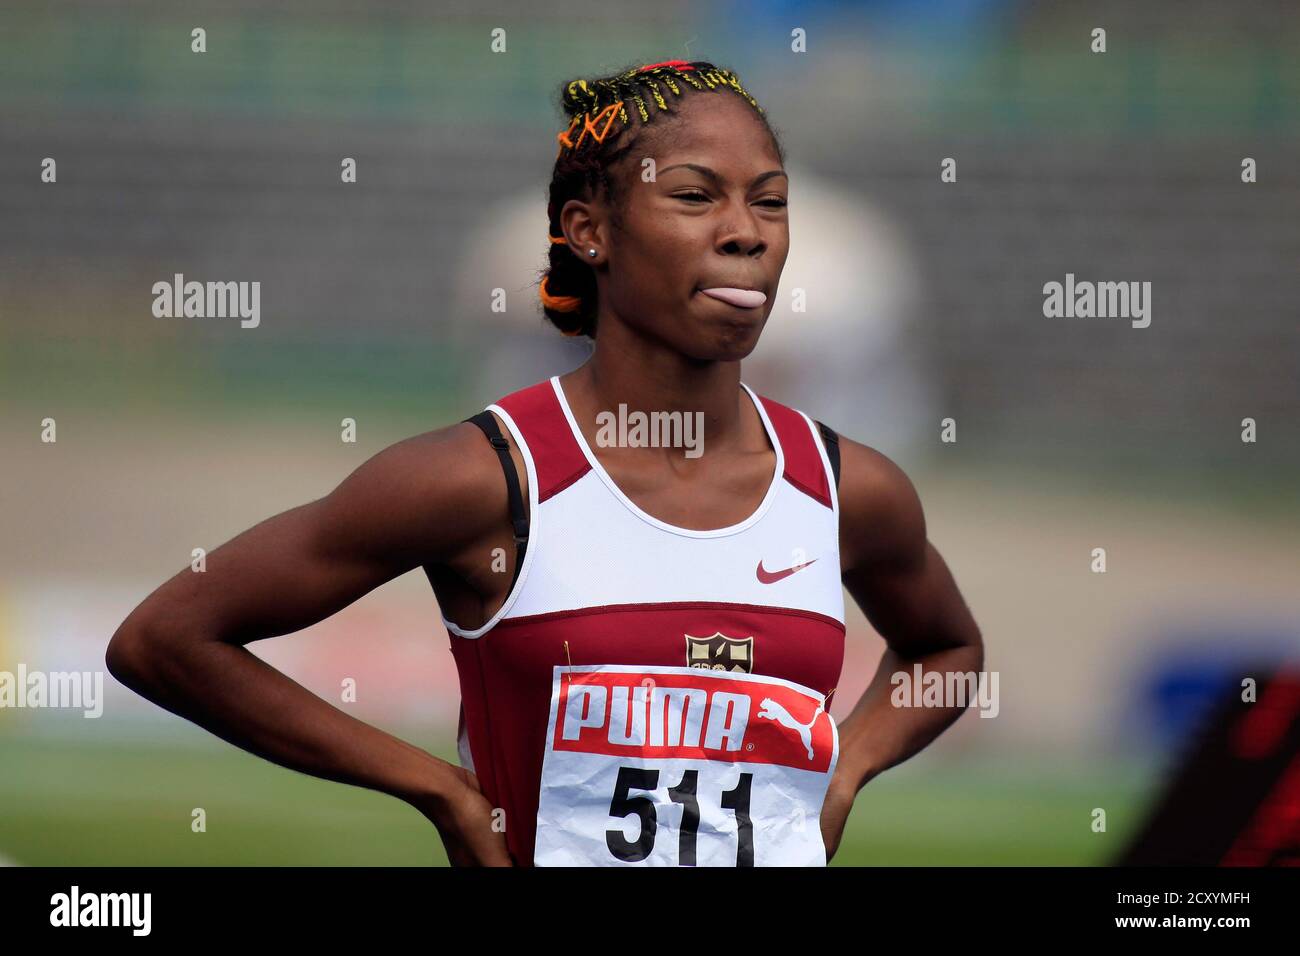 Un atleta se hace gestos después de la carrera de 100 metros de la chica en  el Campeonato de Atletismo de niños y niñas de las Escuelas  Inter-secundarias de Jamaica en Kingston